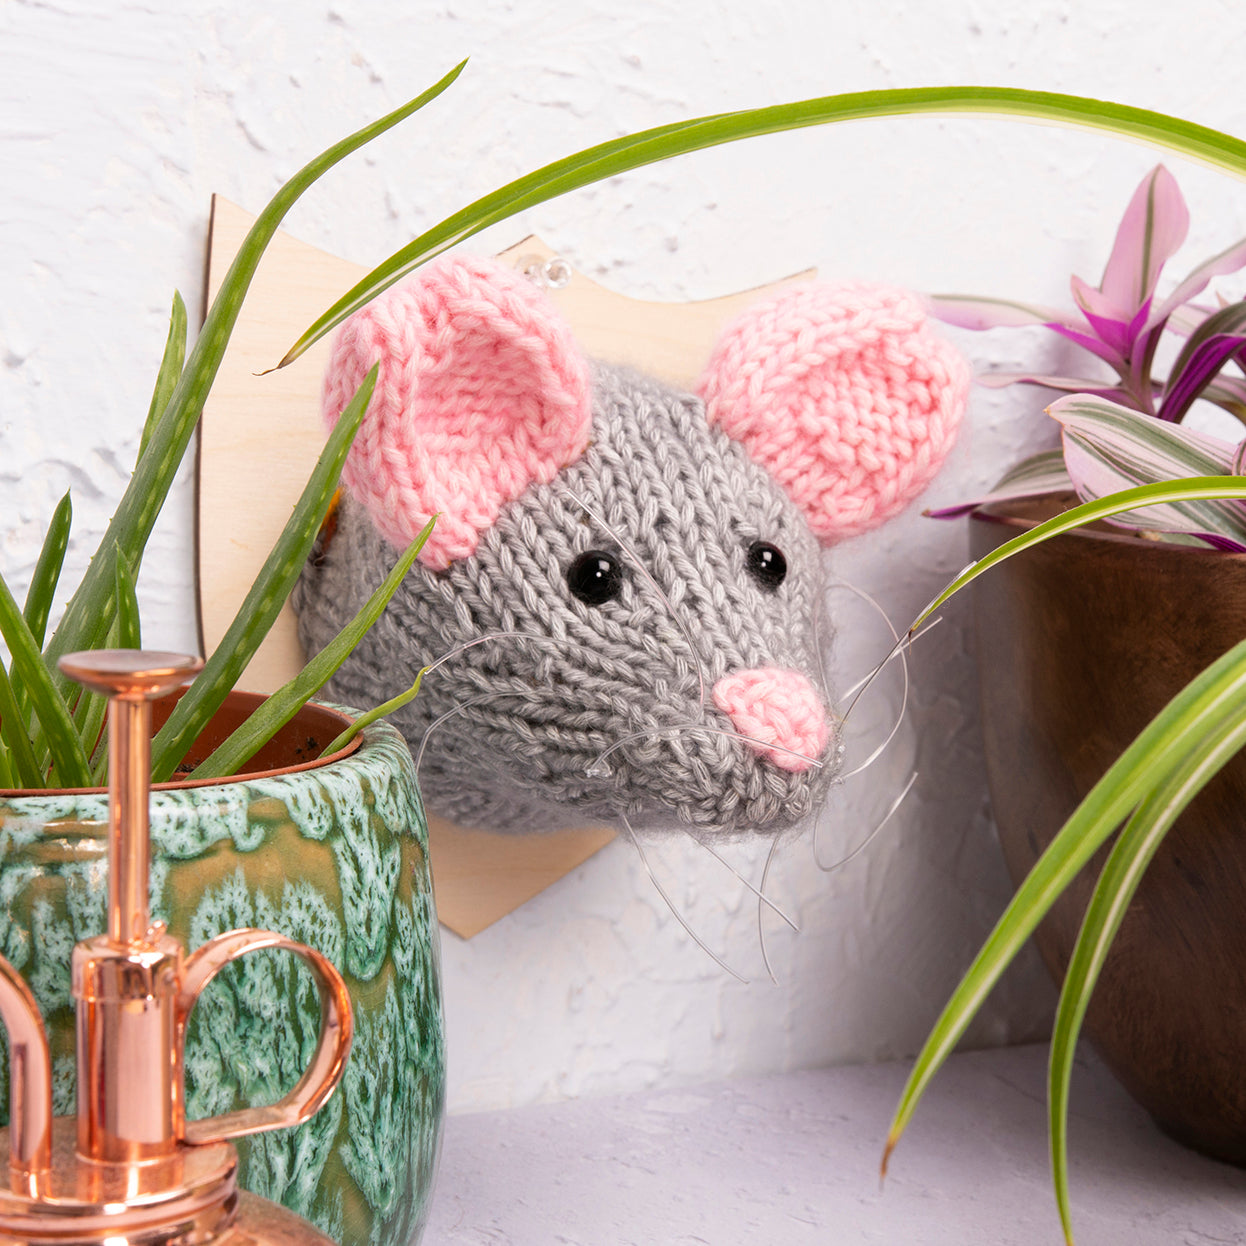 Mini Mouse Head Knitting Kit